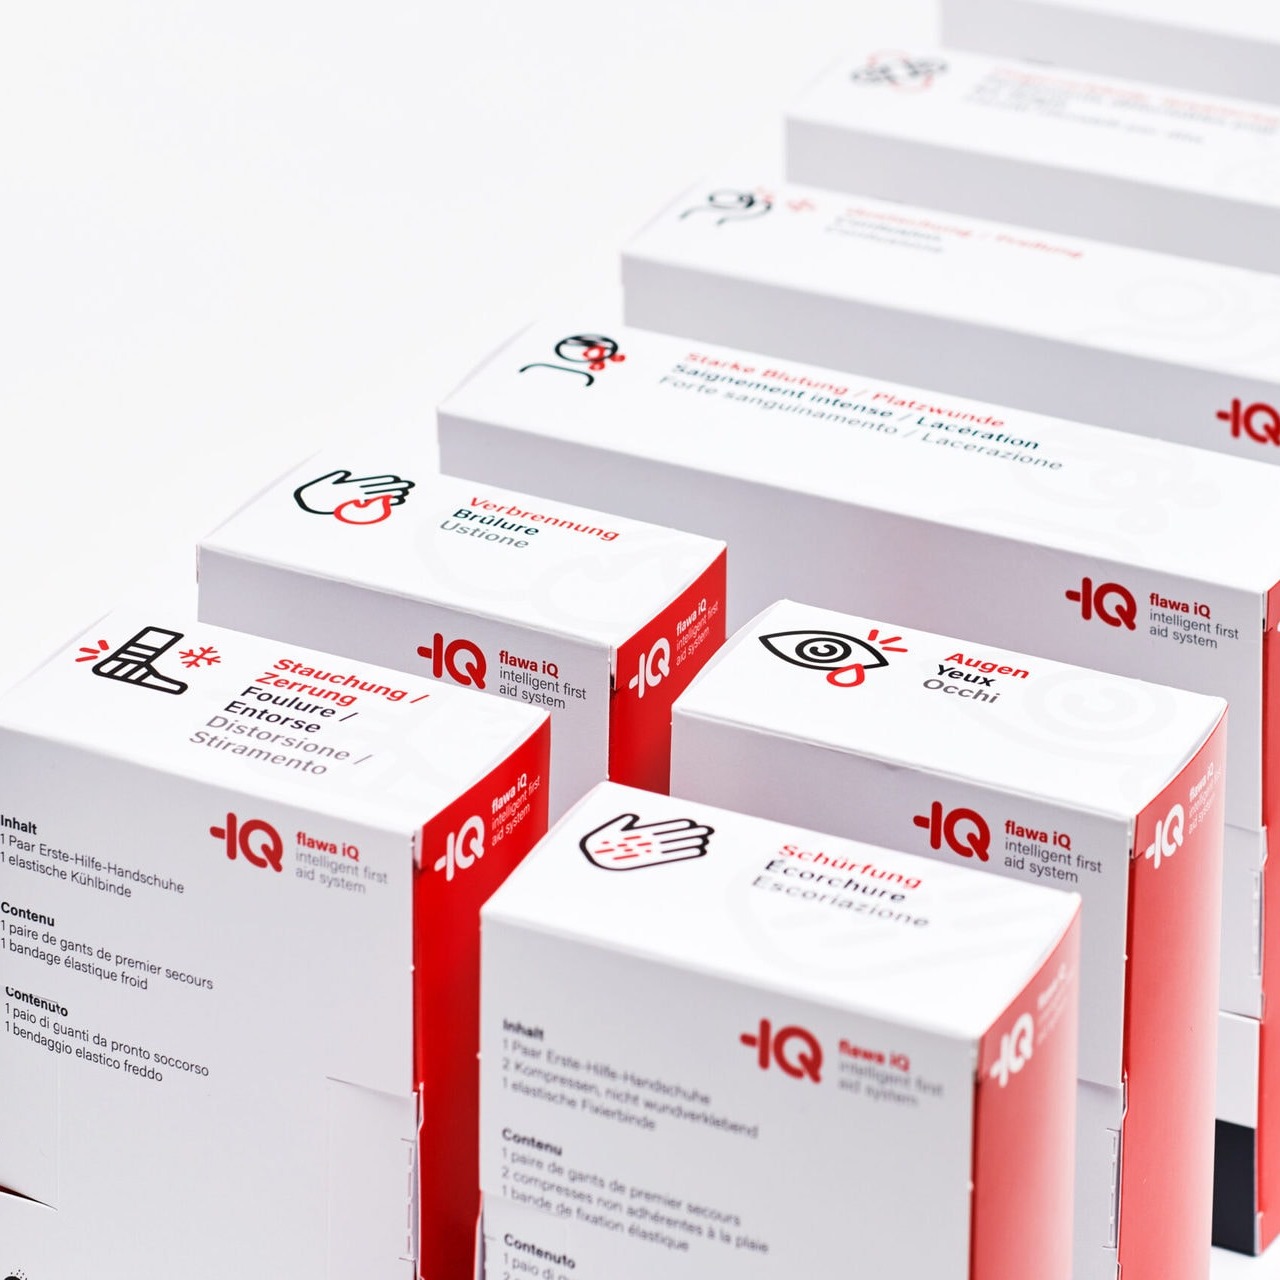 Flawa IQ - Intelligent first aid system